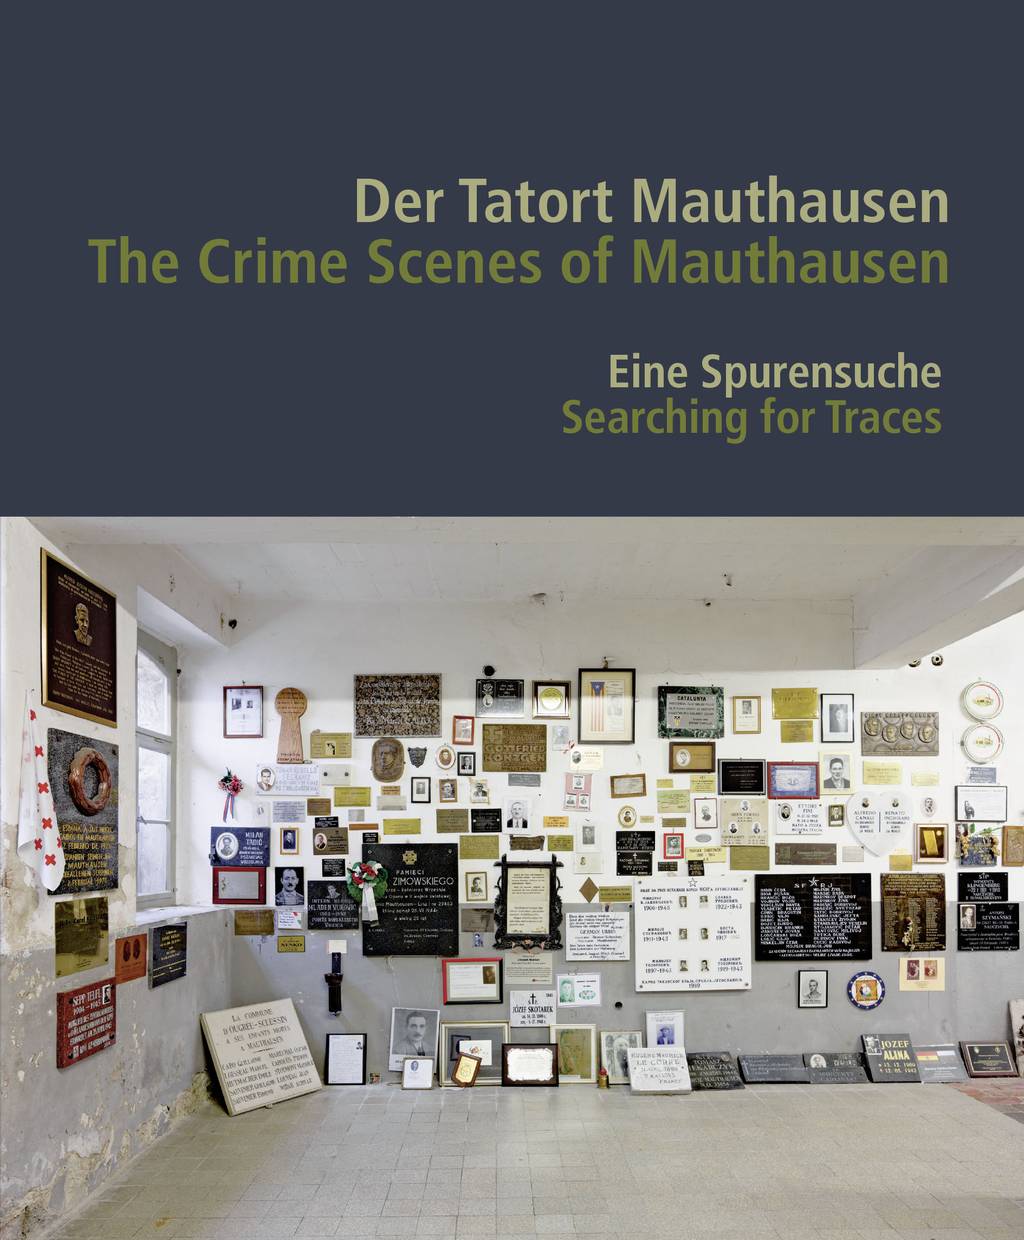 Das Cover für den Ausstellungskatalog "Der Tatort Mauthausen. Eine Spurensuche"